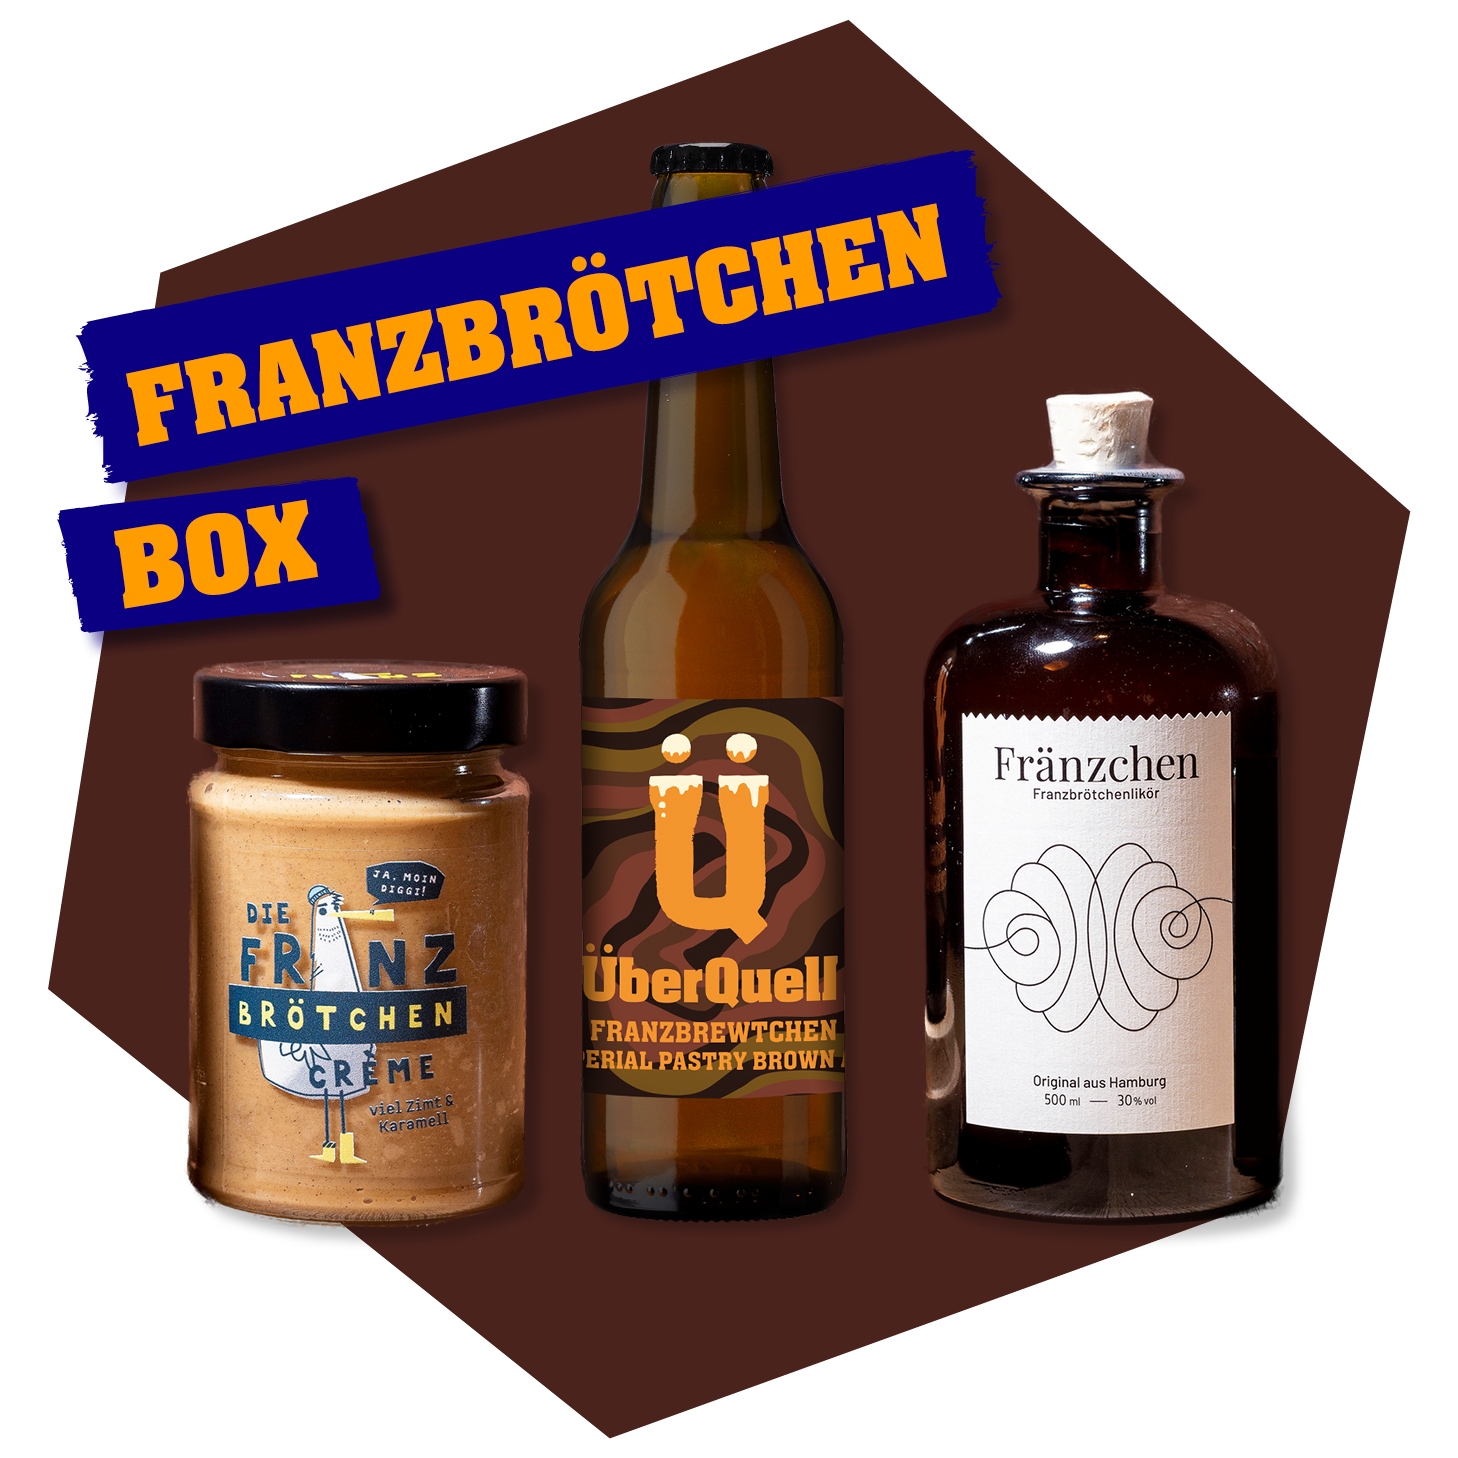 Franzbrötchen Box